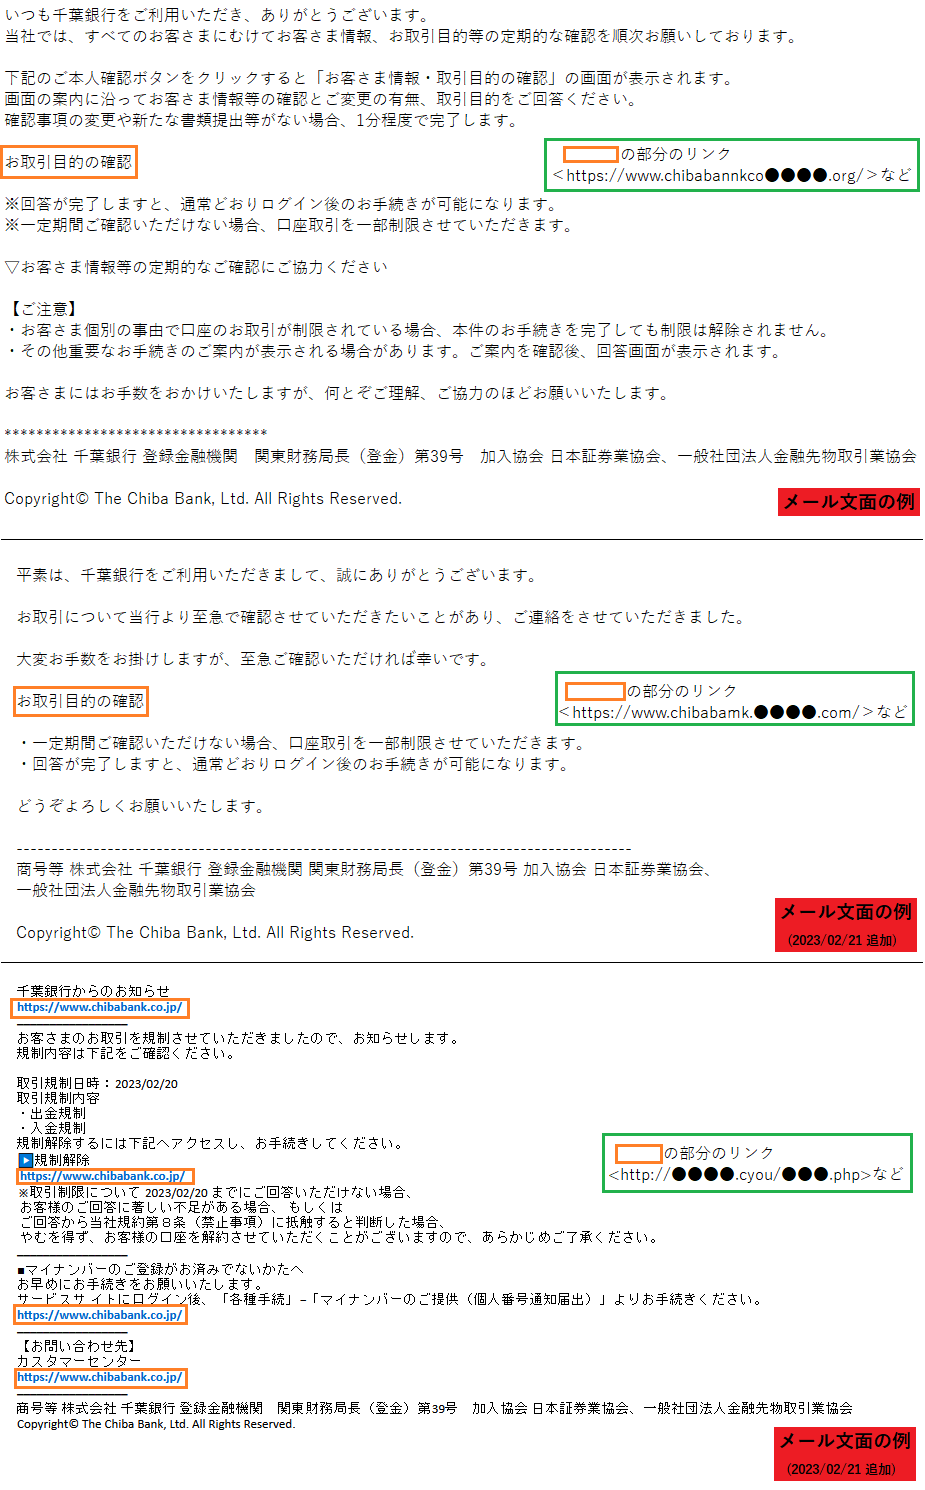 千葉銀行をかたるフィッシング (2023/01/24)